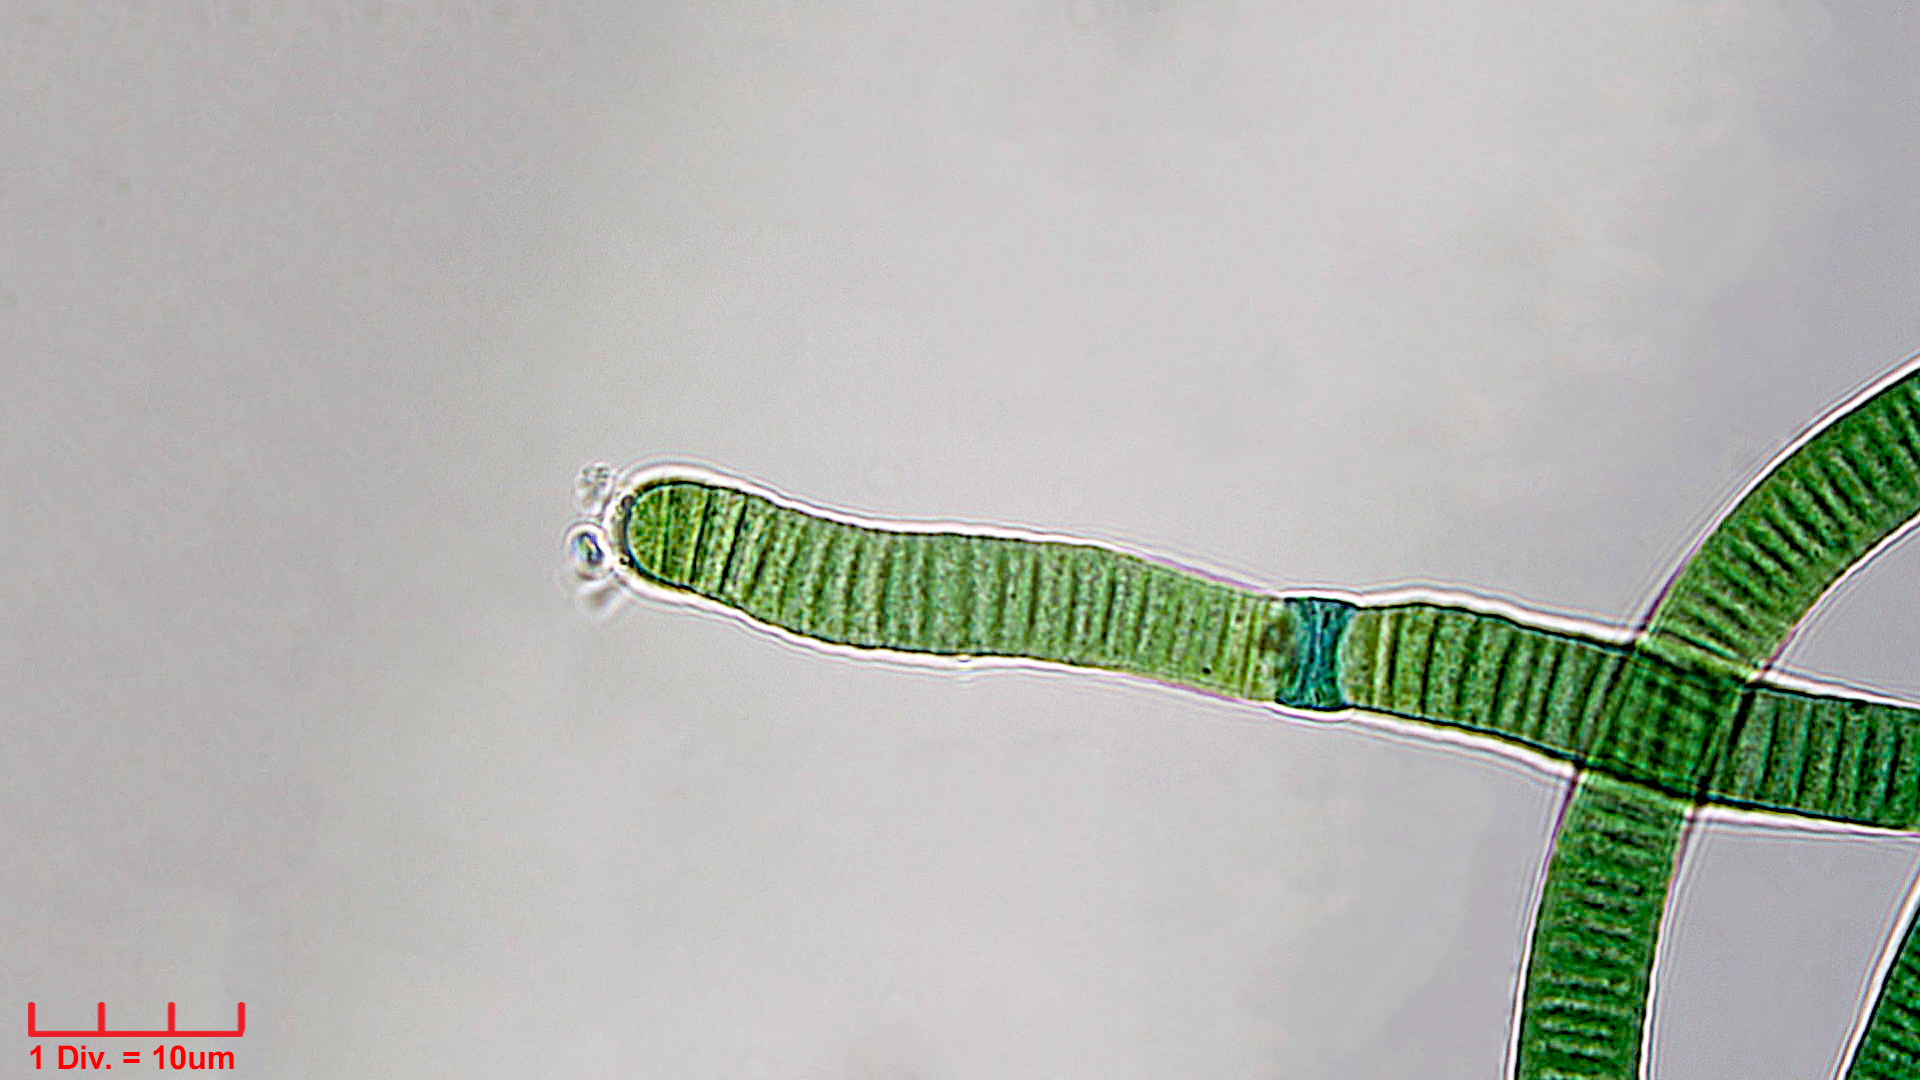 Cyanobacteria/Oscillatoriales/Oscillatoriaceae/Oscillatoria/curviceps/oscillatoria-curviceps-184.jpg